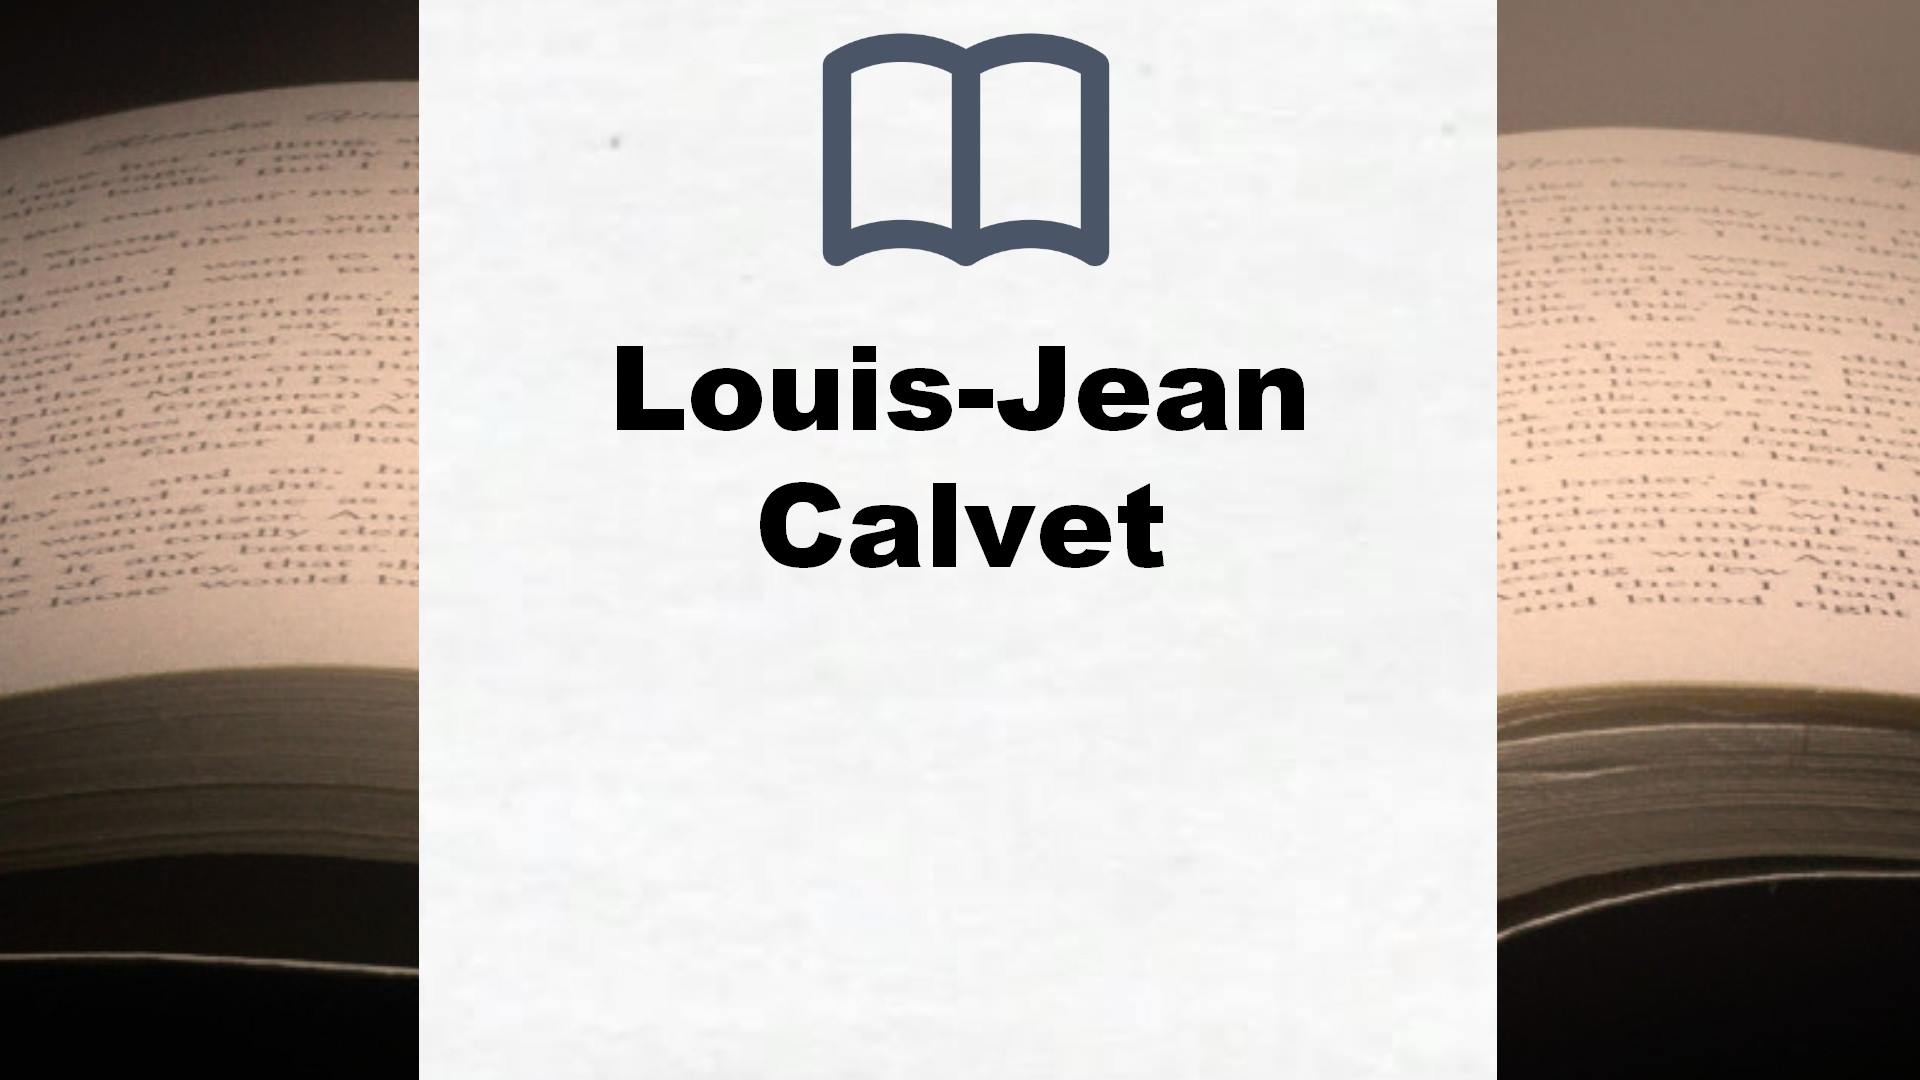 Libros Louis-Jean Calvet